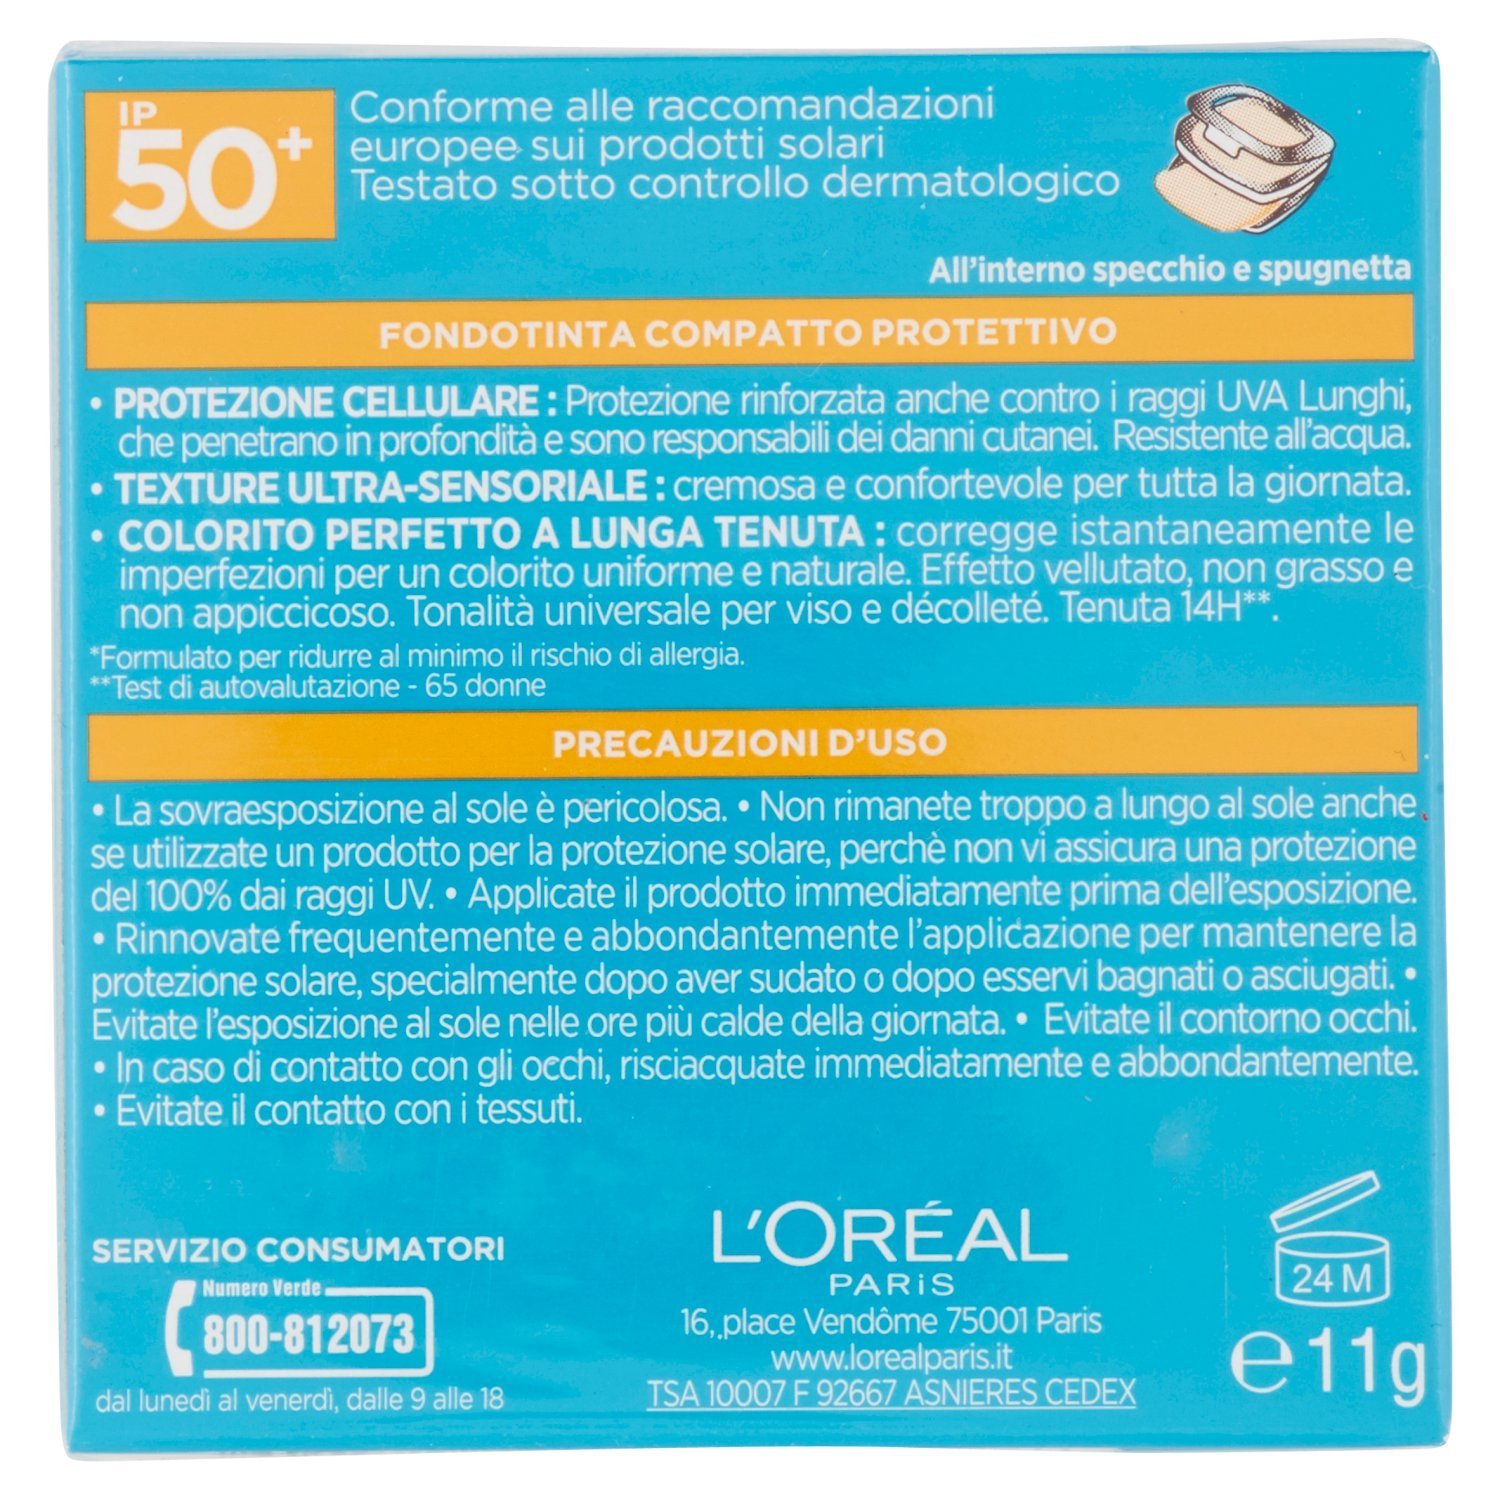 Tra le tante offerte che ogni giorno propone il web, oggi vorrei segnalarvi un prodotto adattissimo all'estate, il fondotinta compatto con protezione solare di L'Oréal.